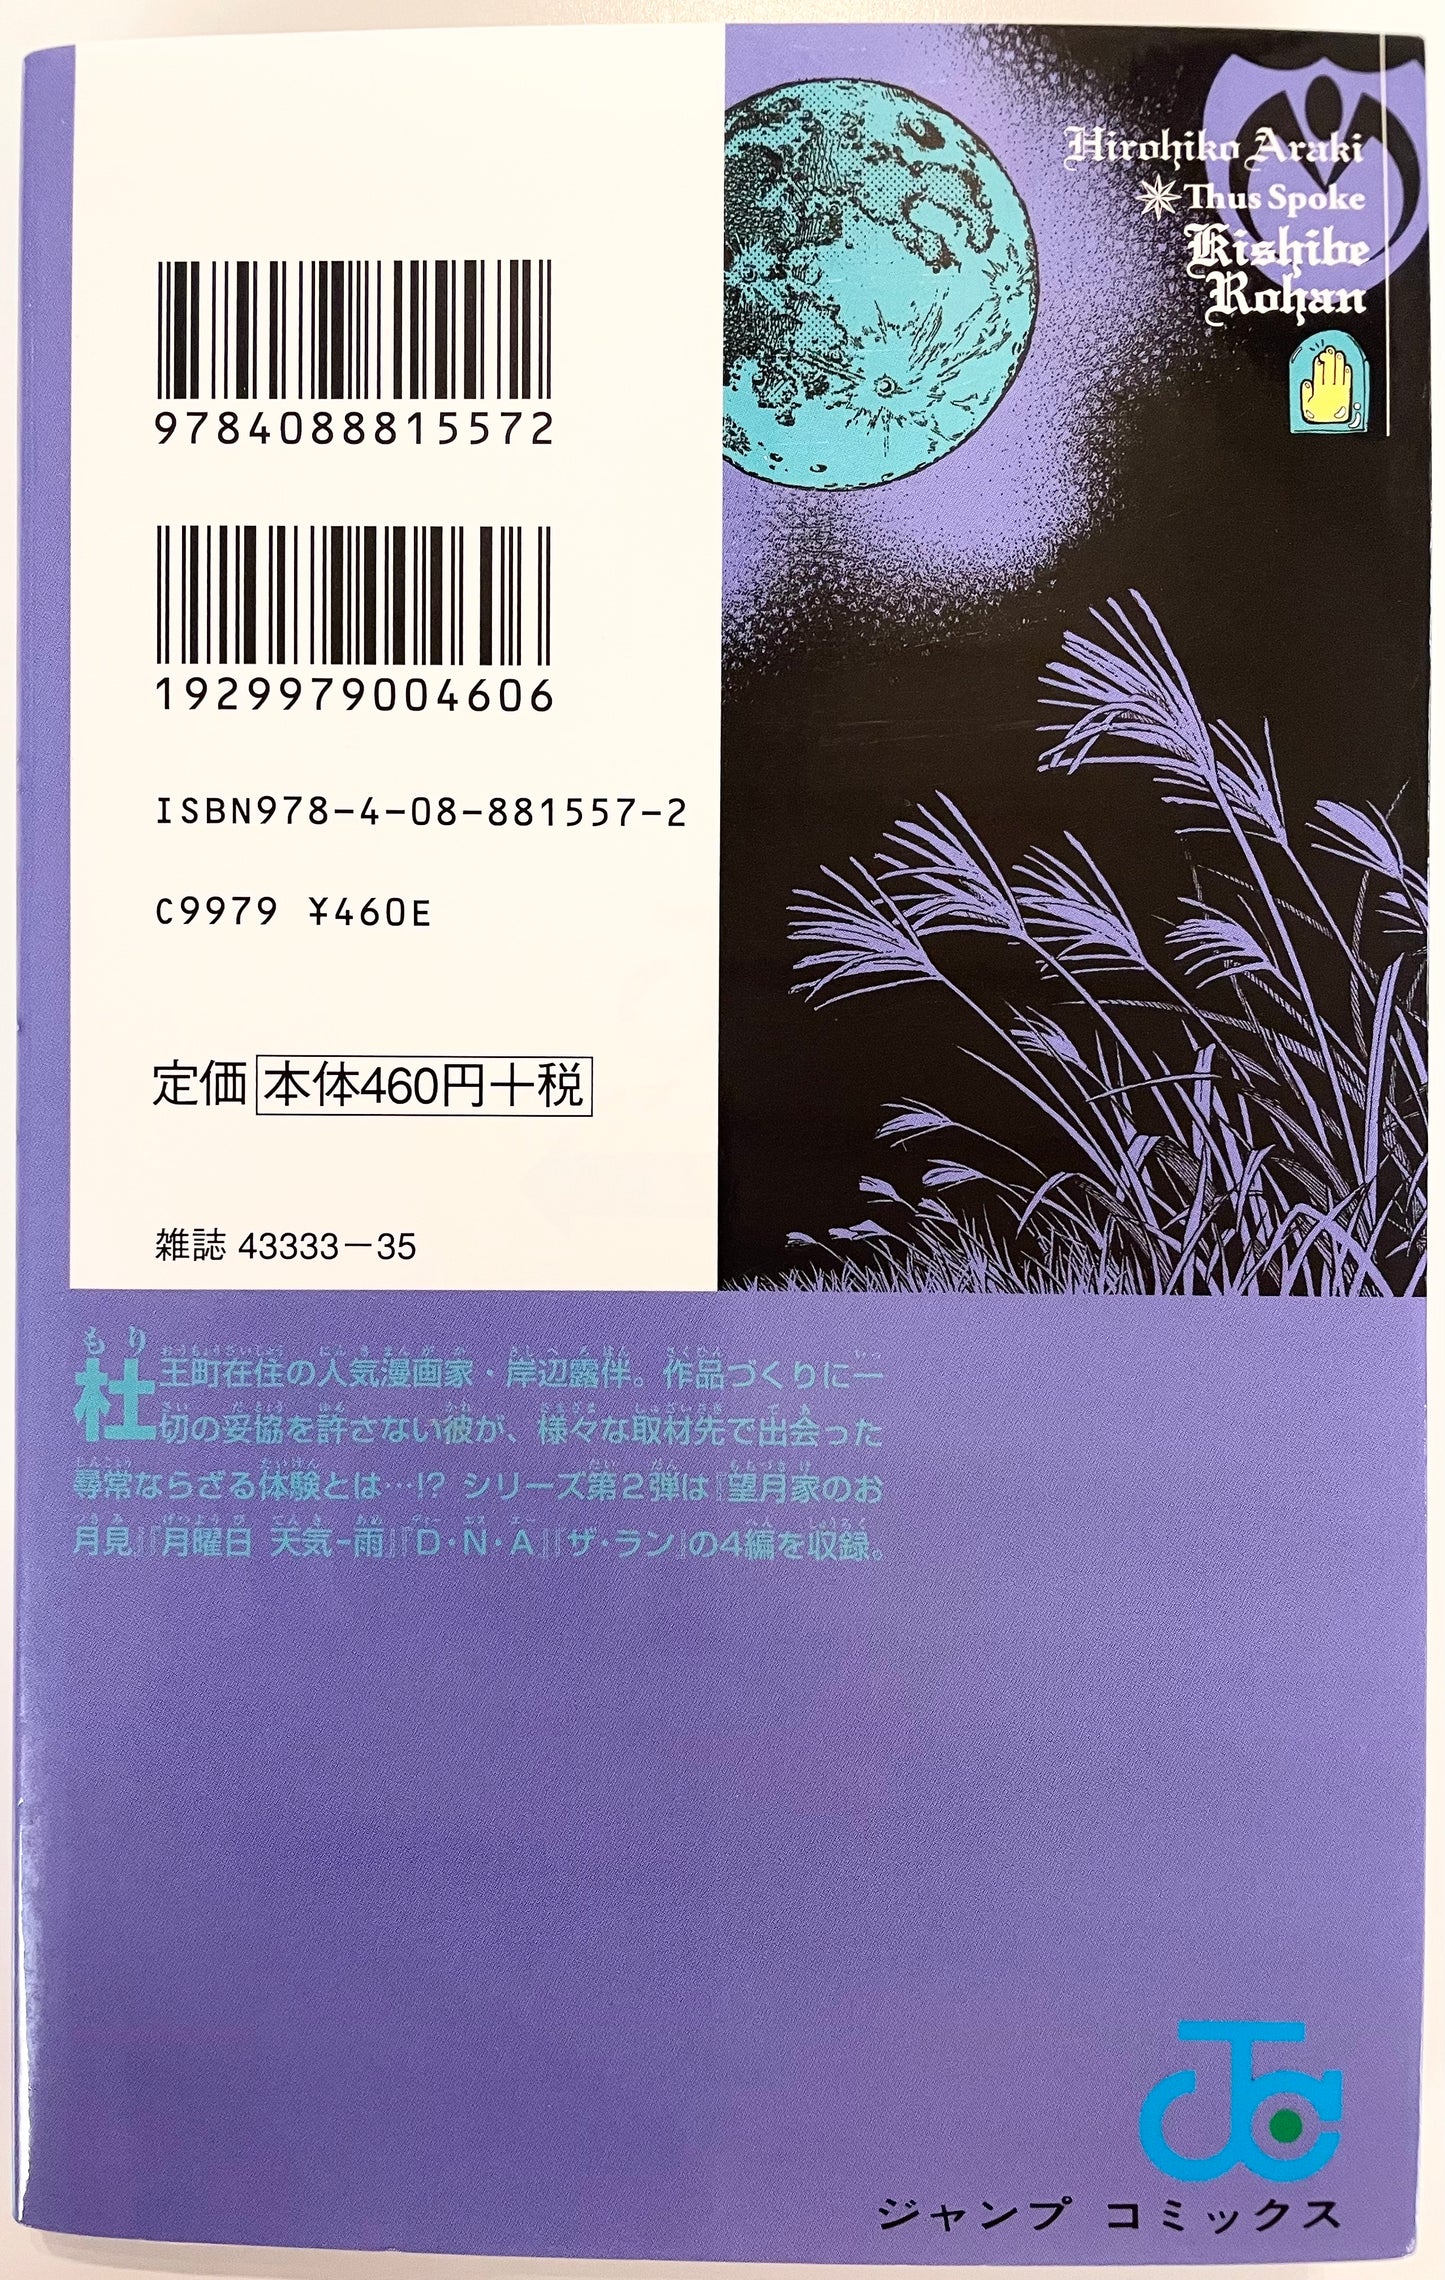 Thus Spoke Kishibe Rohan VOl.2-Official Japanese Edition